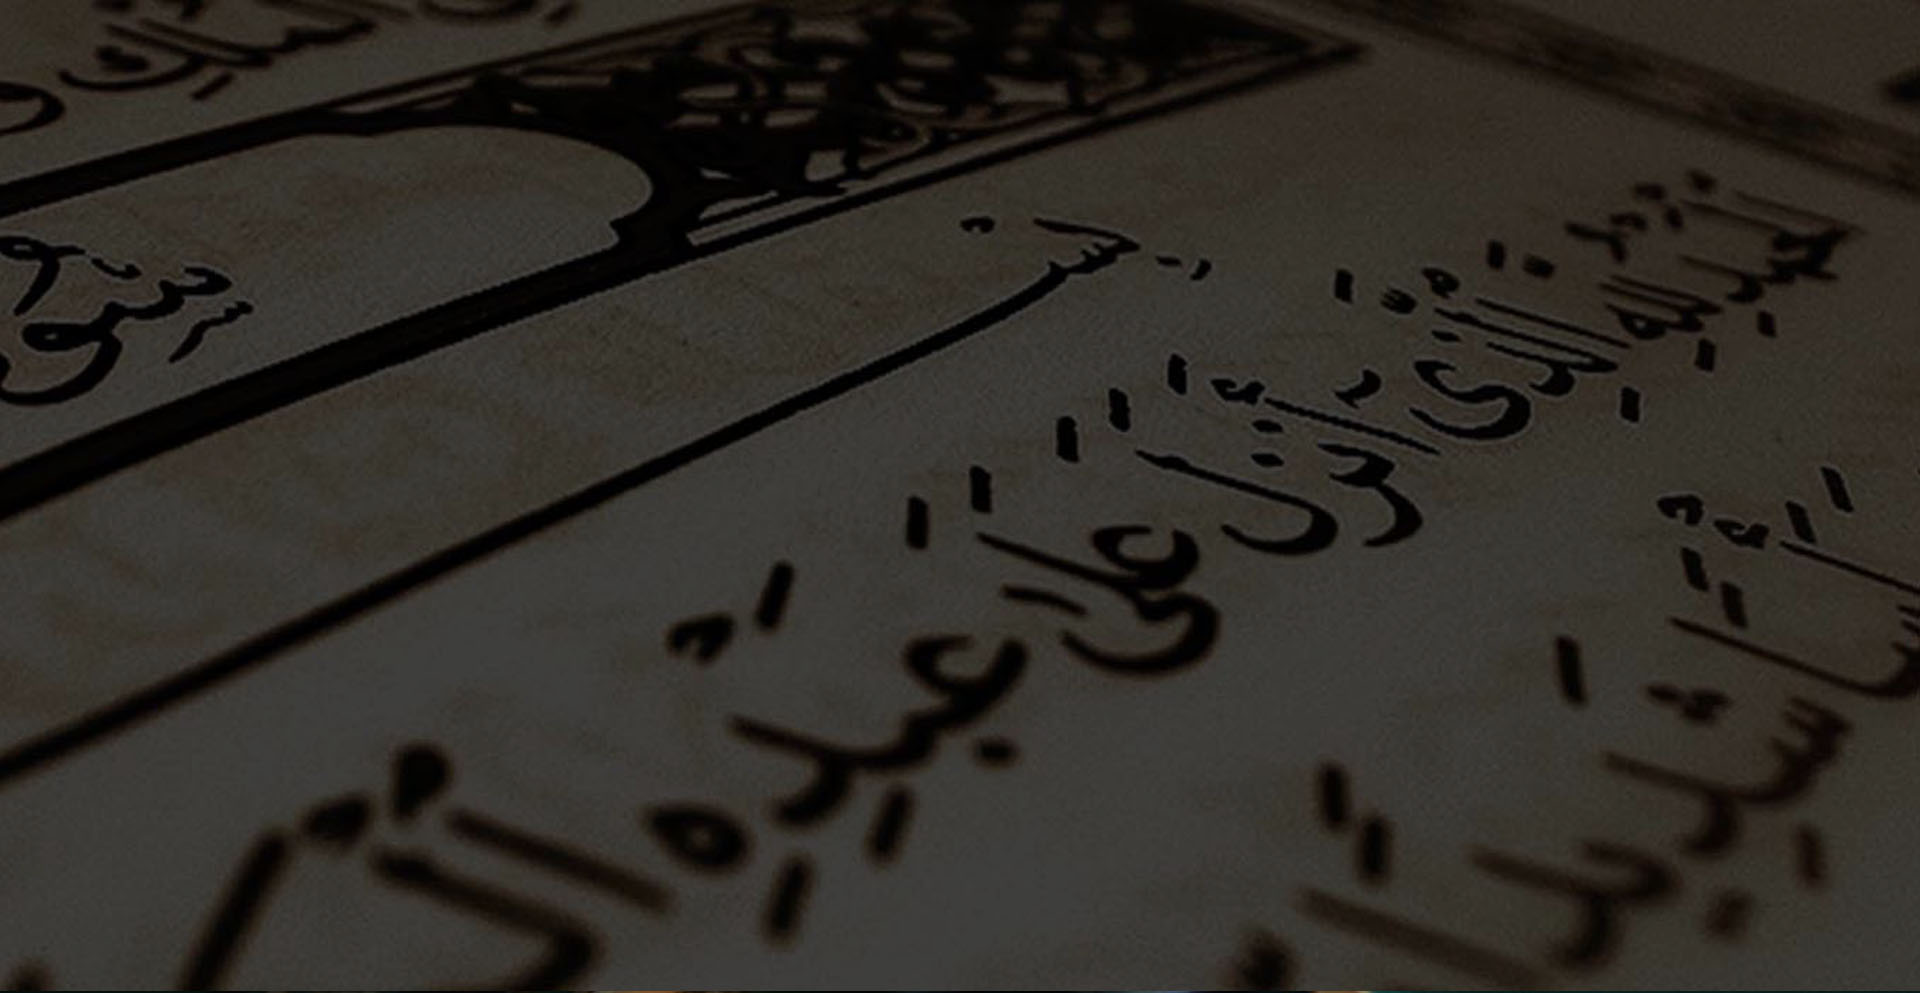  المراكز القرآنية المتقدمة التي يحضر فيها خريجي حفظ القرآن الكريم